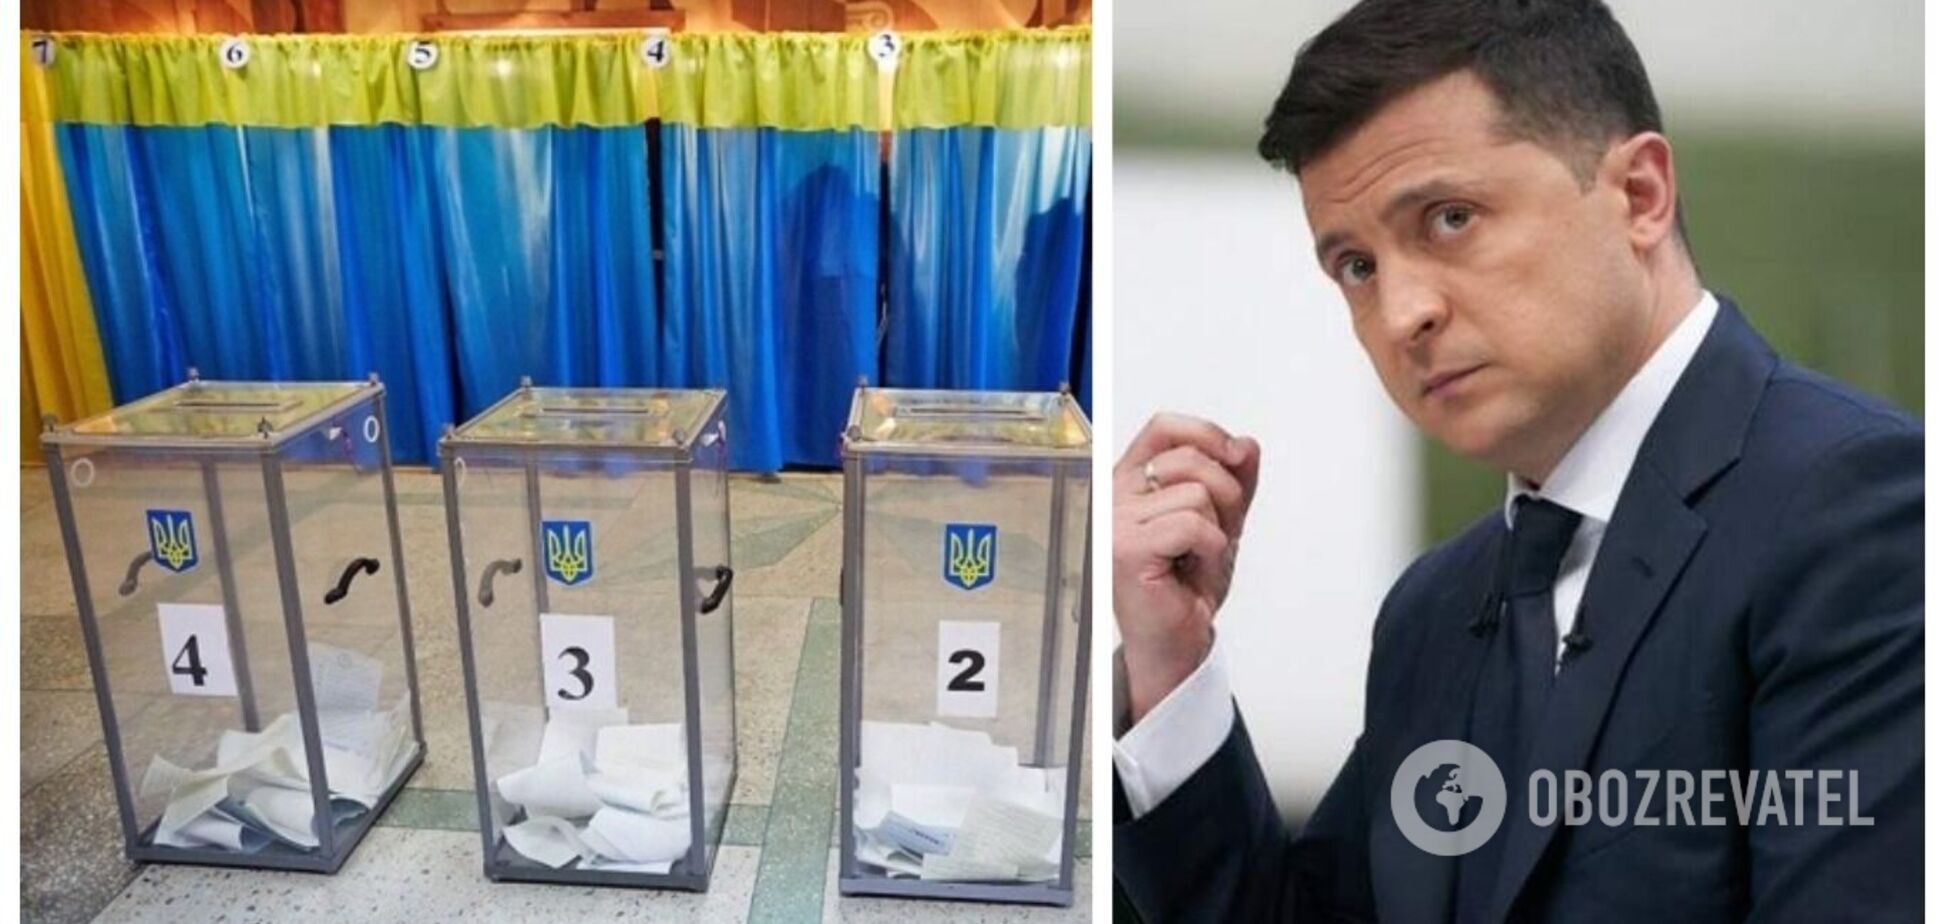 Зеленский лидирует в президентском рейтинге, на втором месте – Порошенко: данные соцопроса